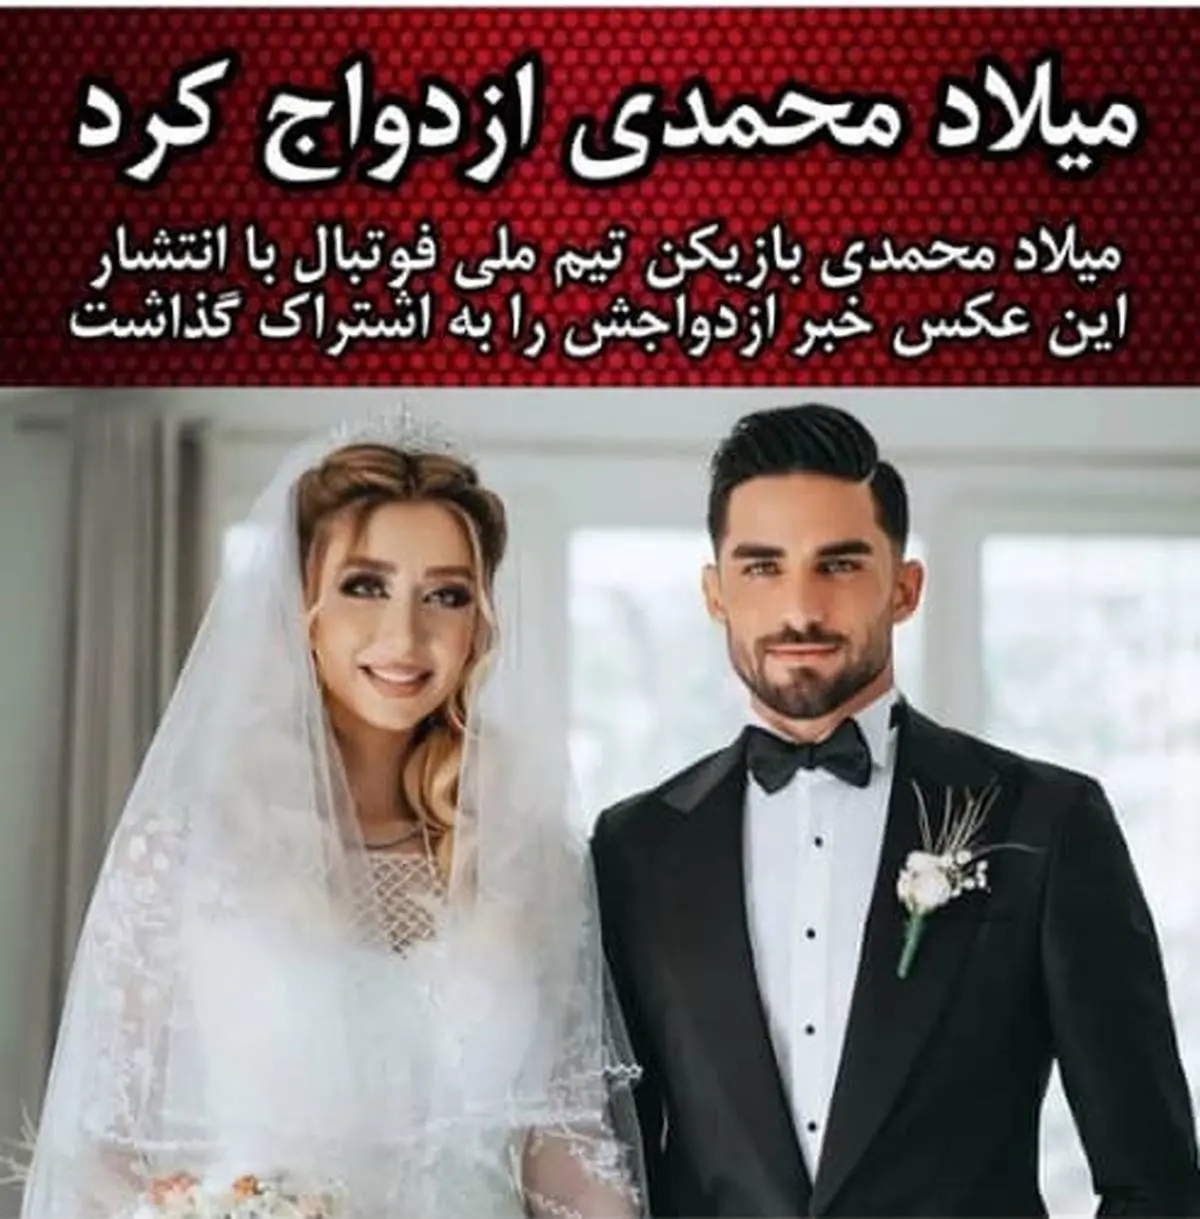 میلاد محمدی ازدواج کرد + عکس مراسم ازدواج و همسرش